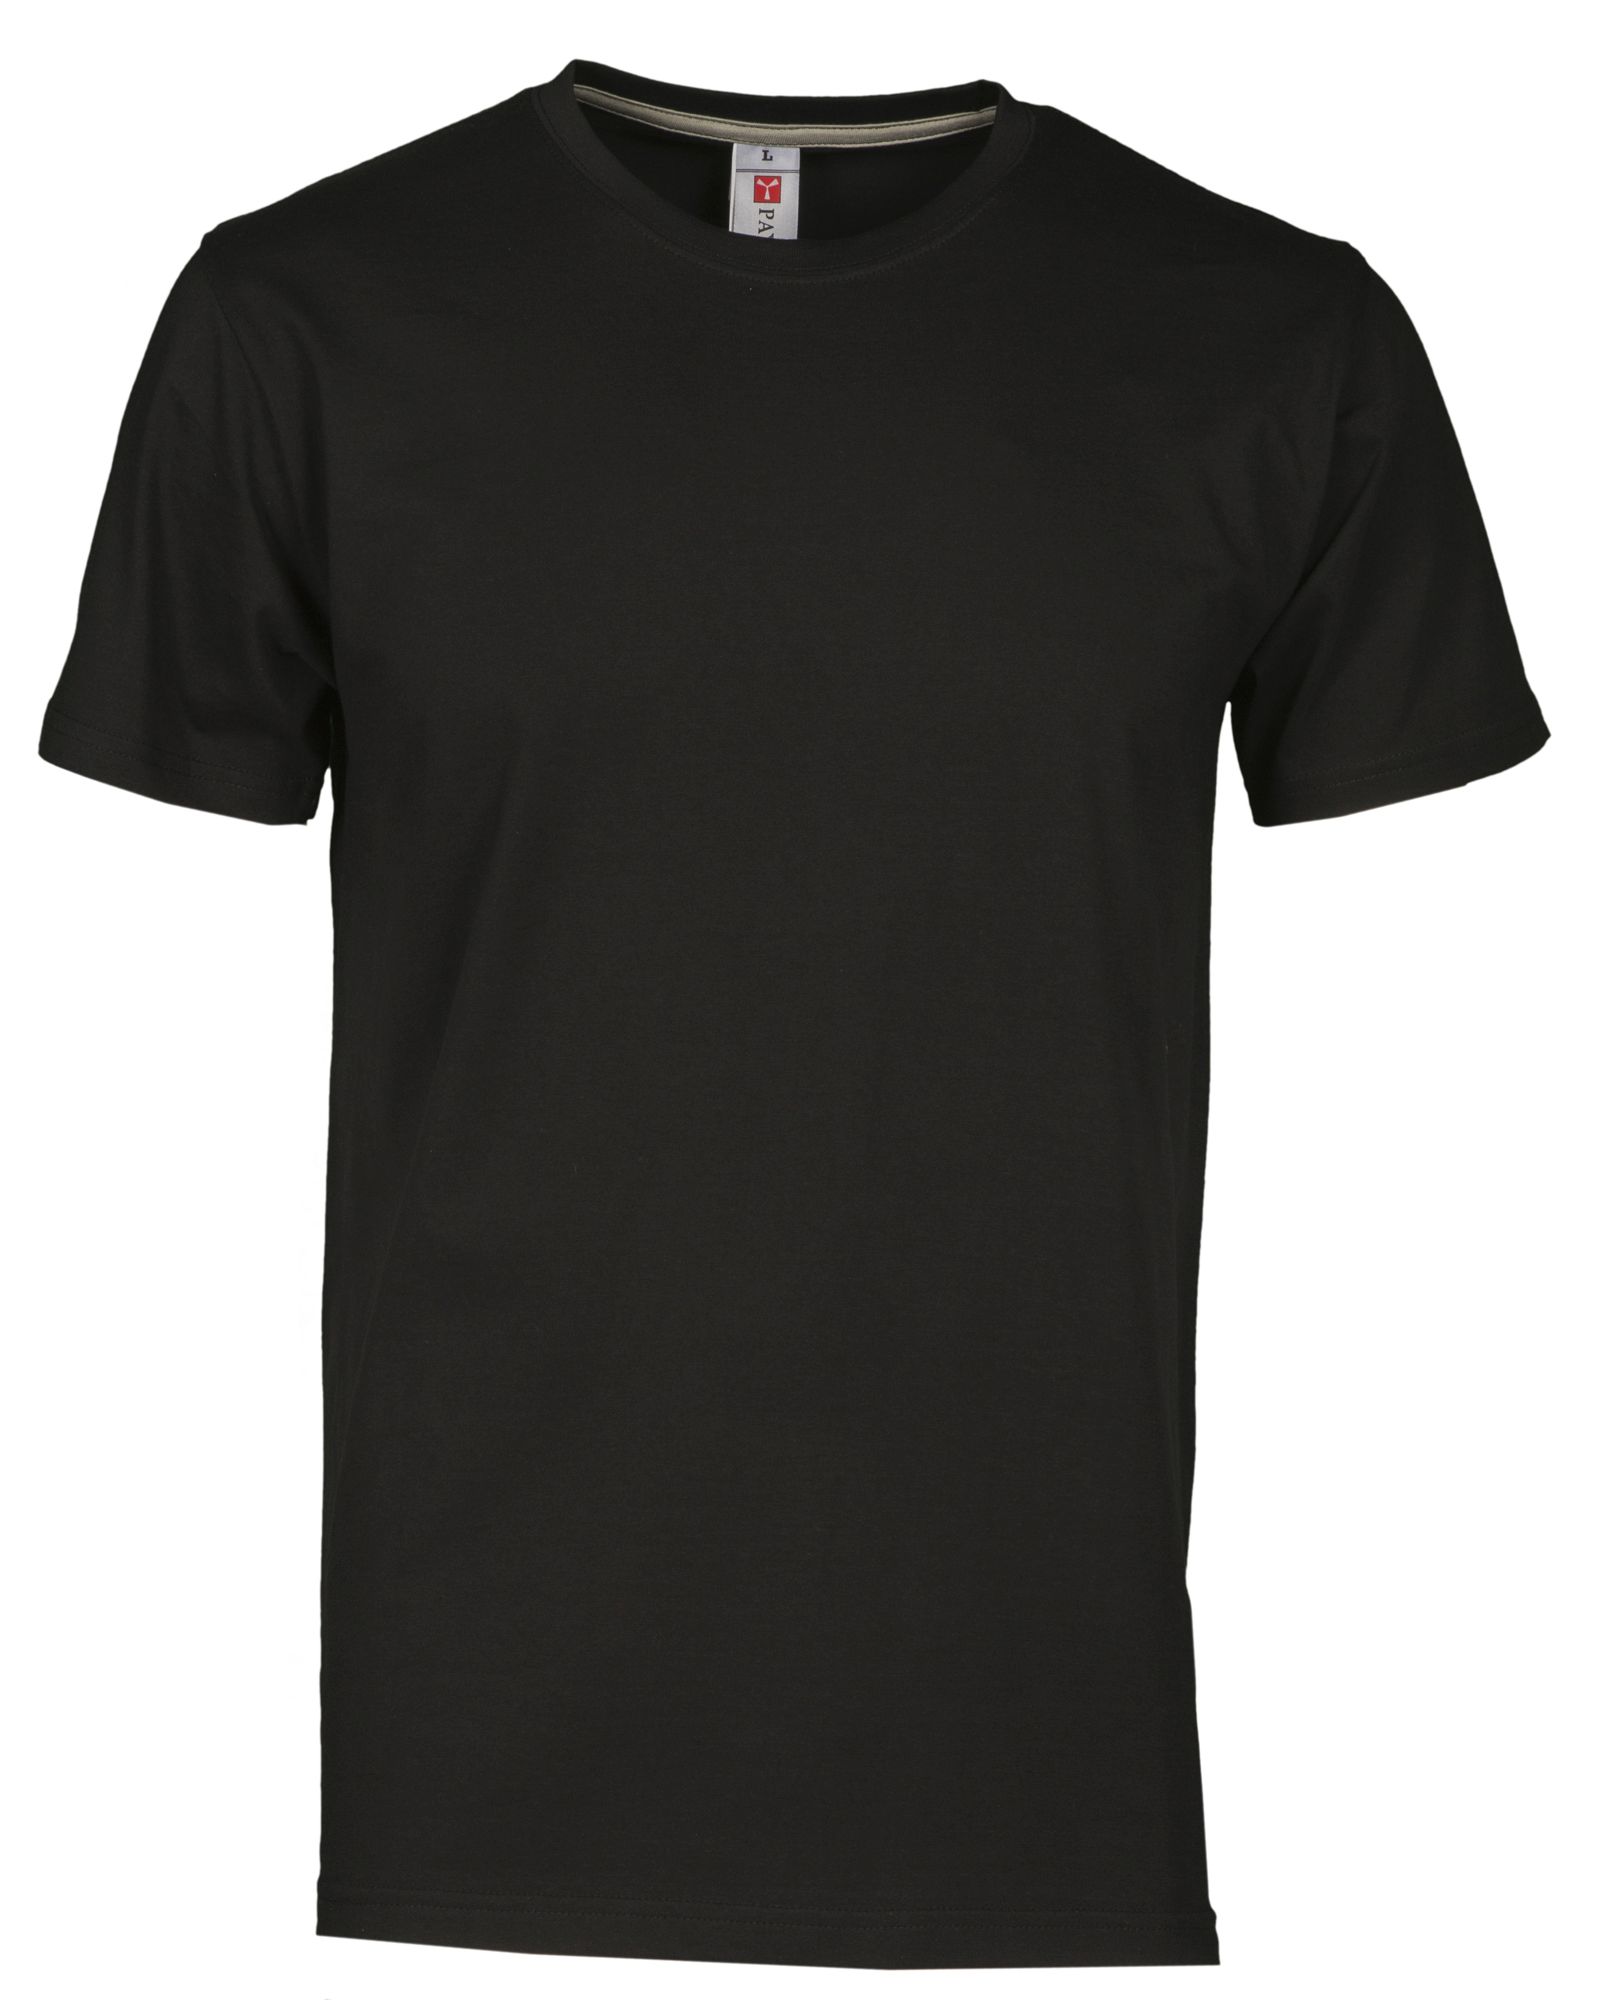 Unisexové tričko SUNSET PAYPER 4-5 XL (trička do 5XL)